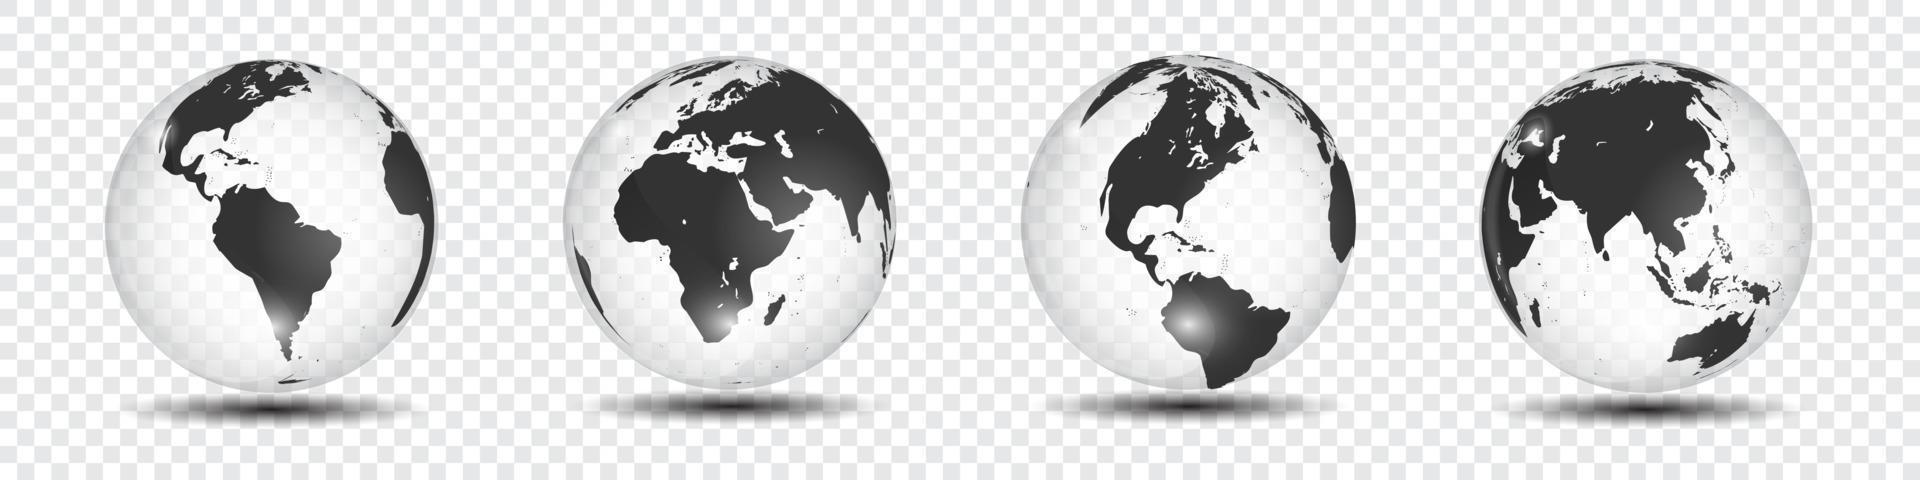 carte du monde réaliste en forme de globe terrestre sur fond transparent. illustration vectorielle vecteur